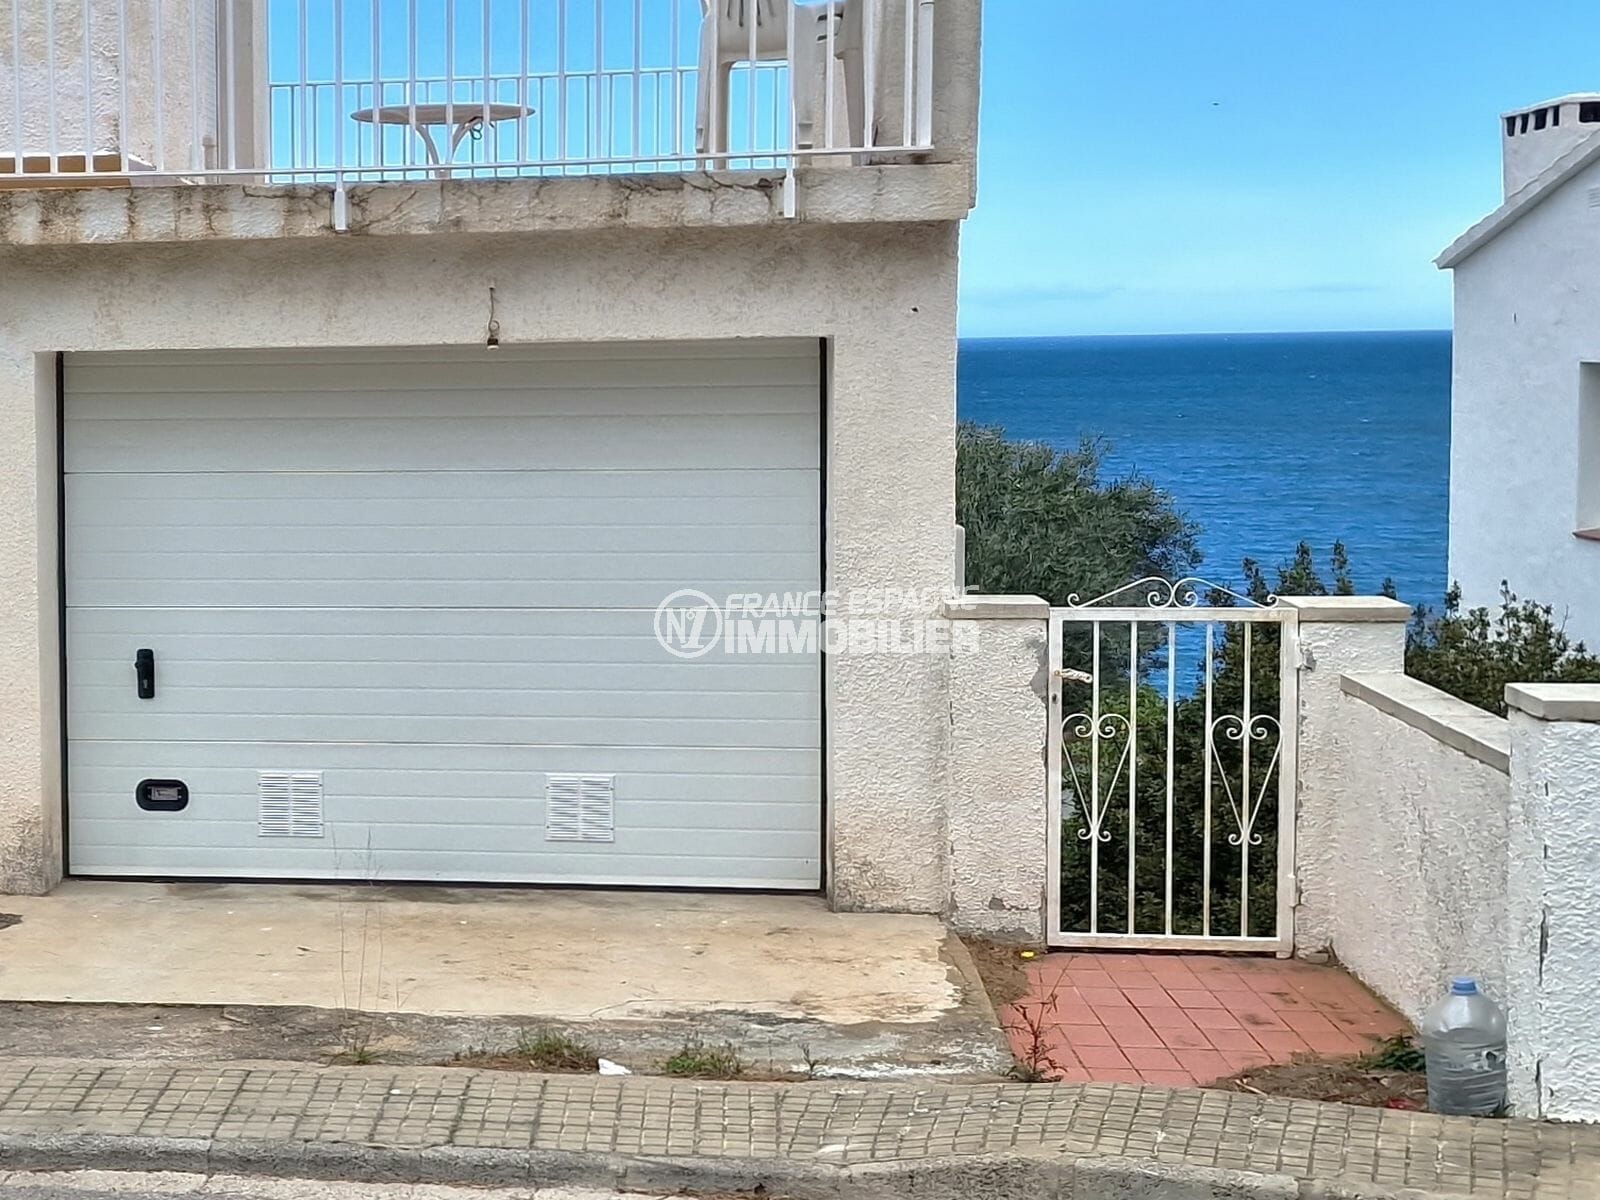 Llanca – a vendre garage à 500m de la plage dans secteur prisé